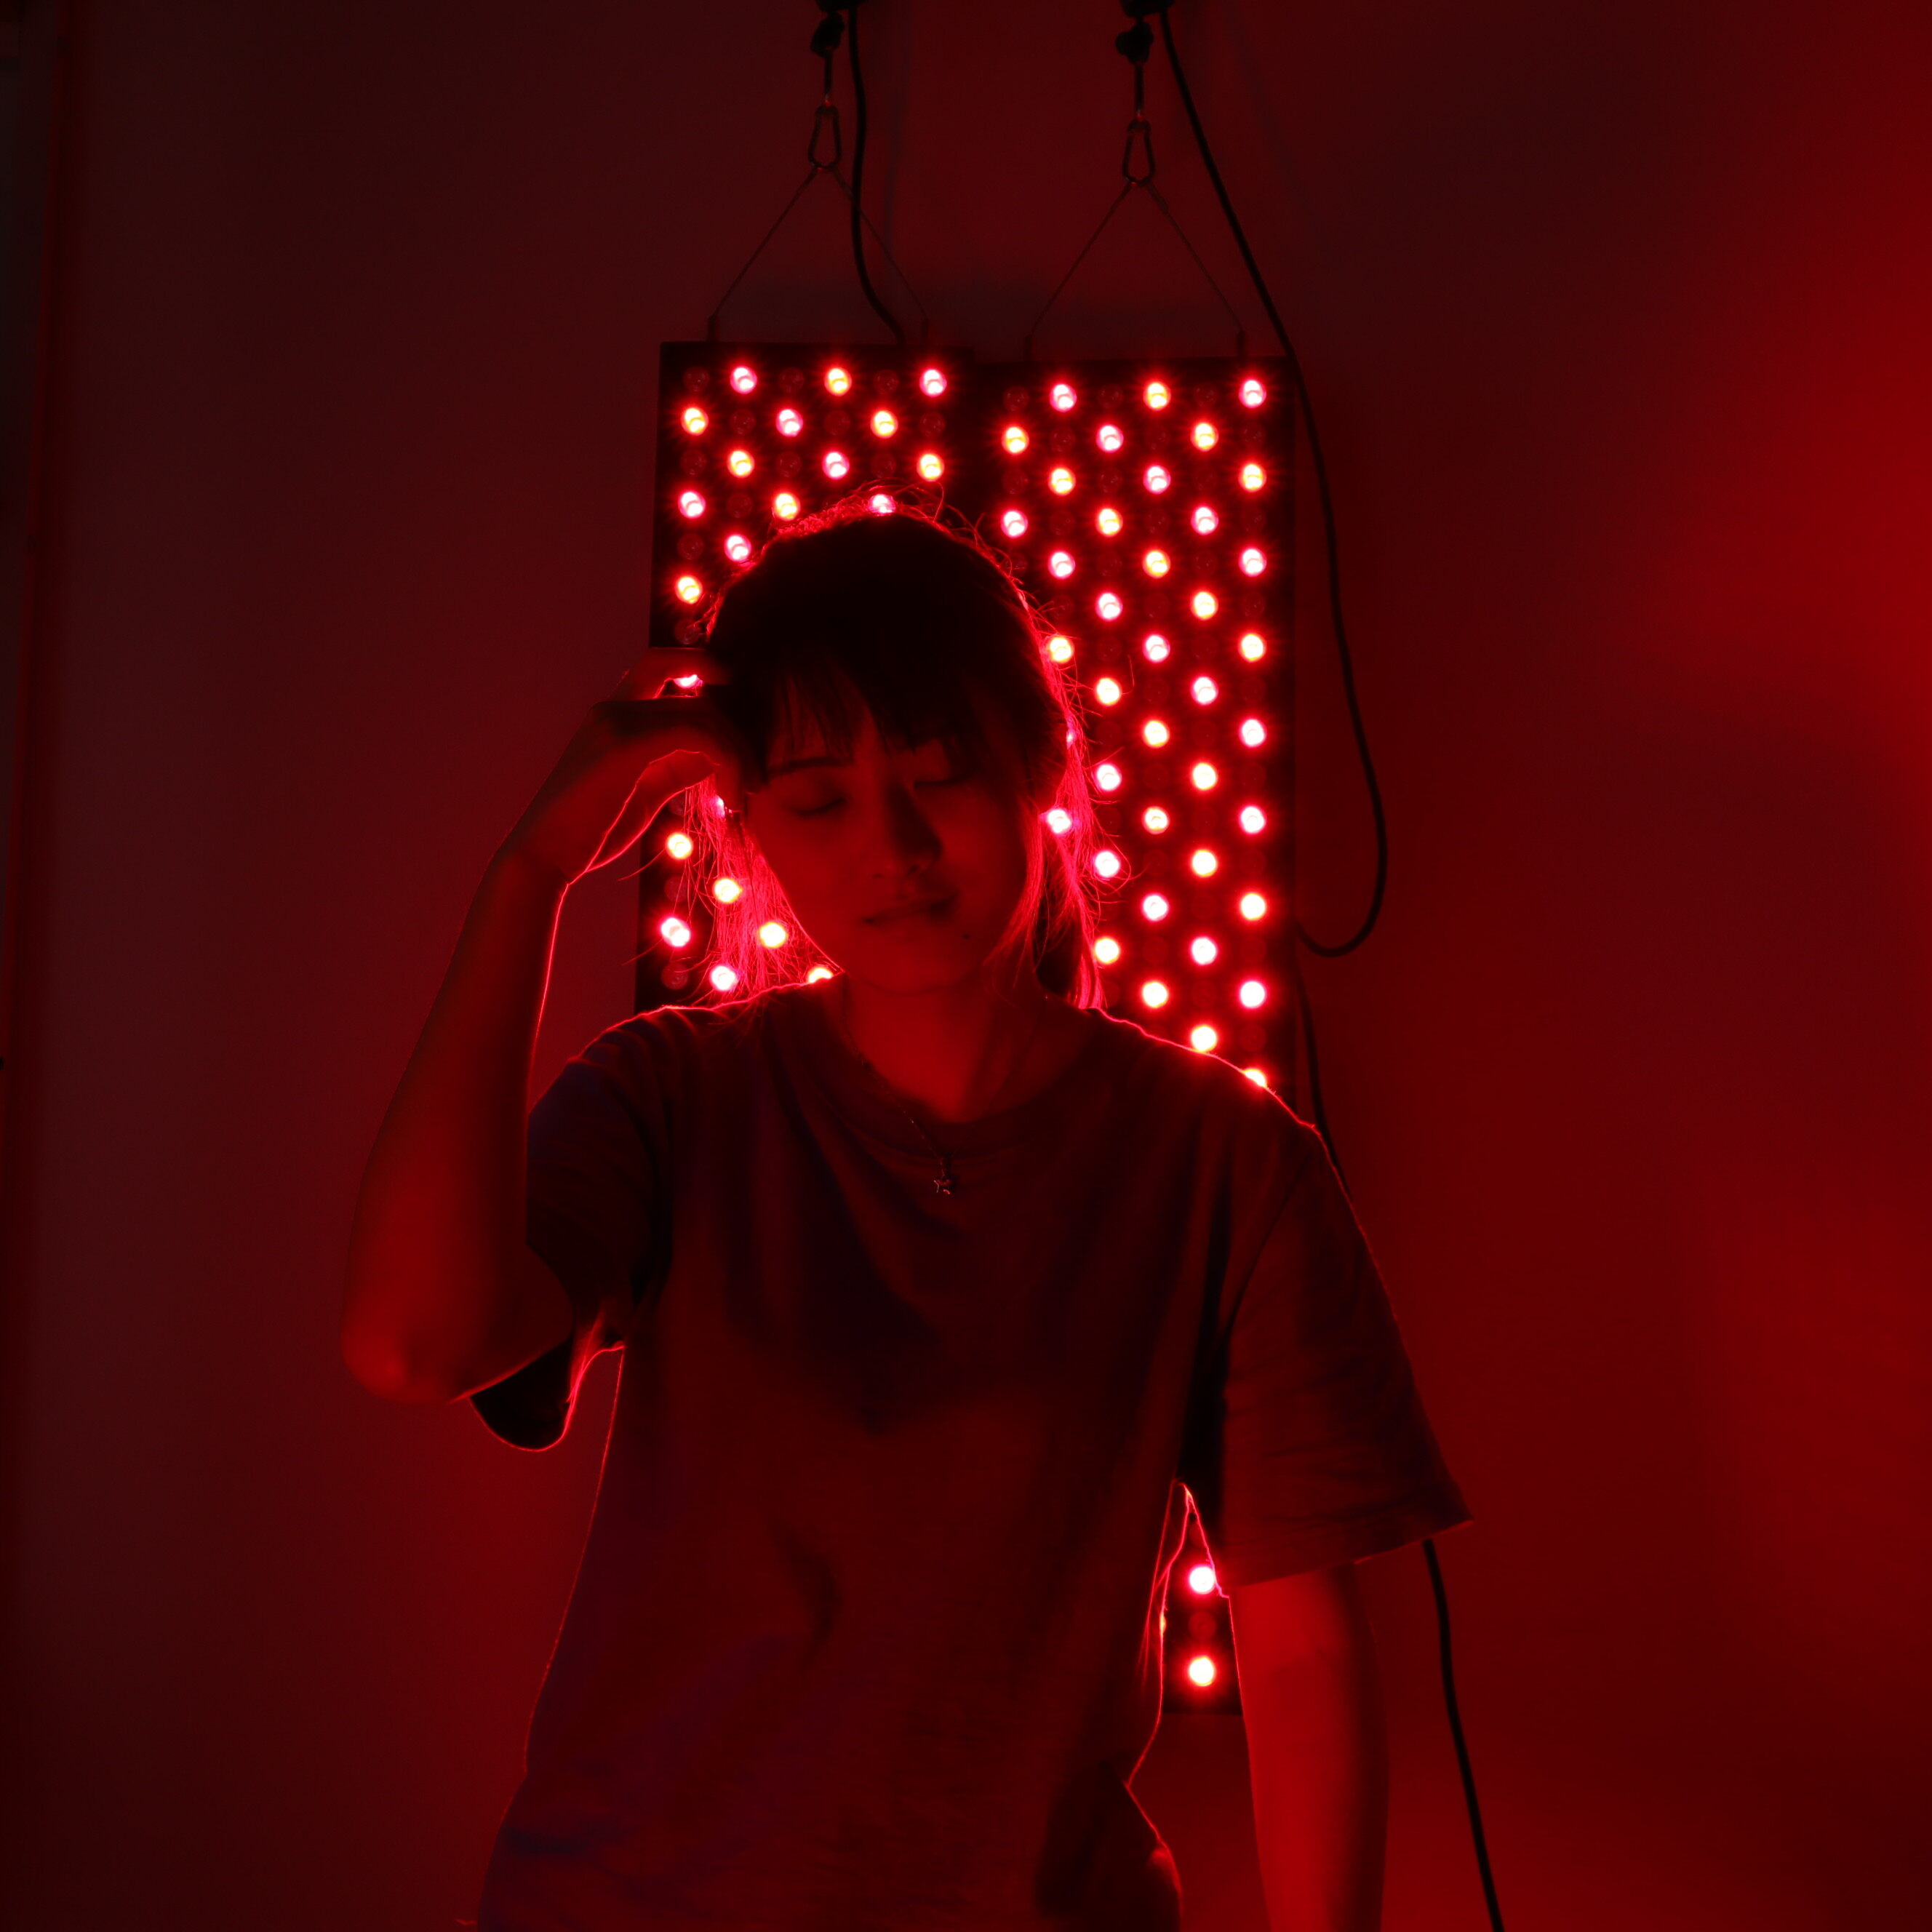 635nm red light therapy, 635nm red light, 635 nm red light therapy, red 635 nm led light